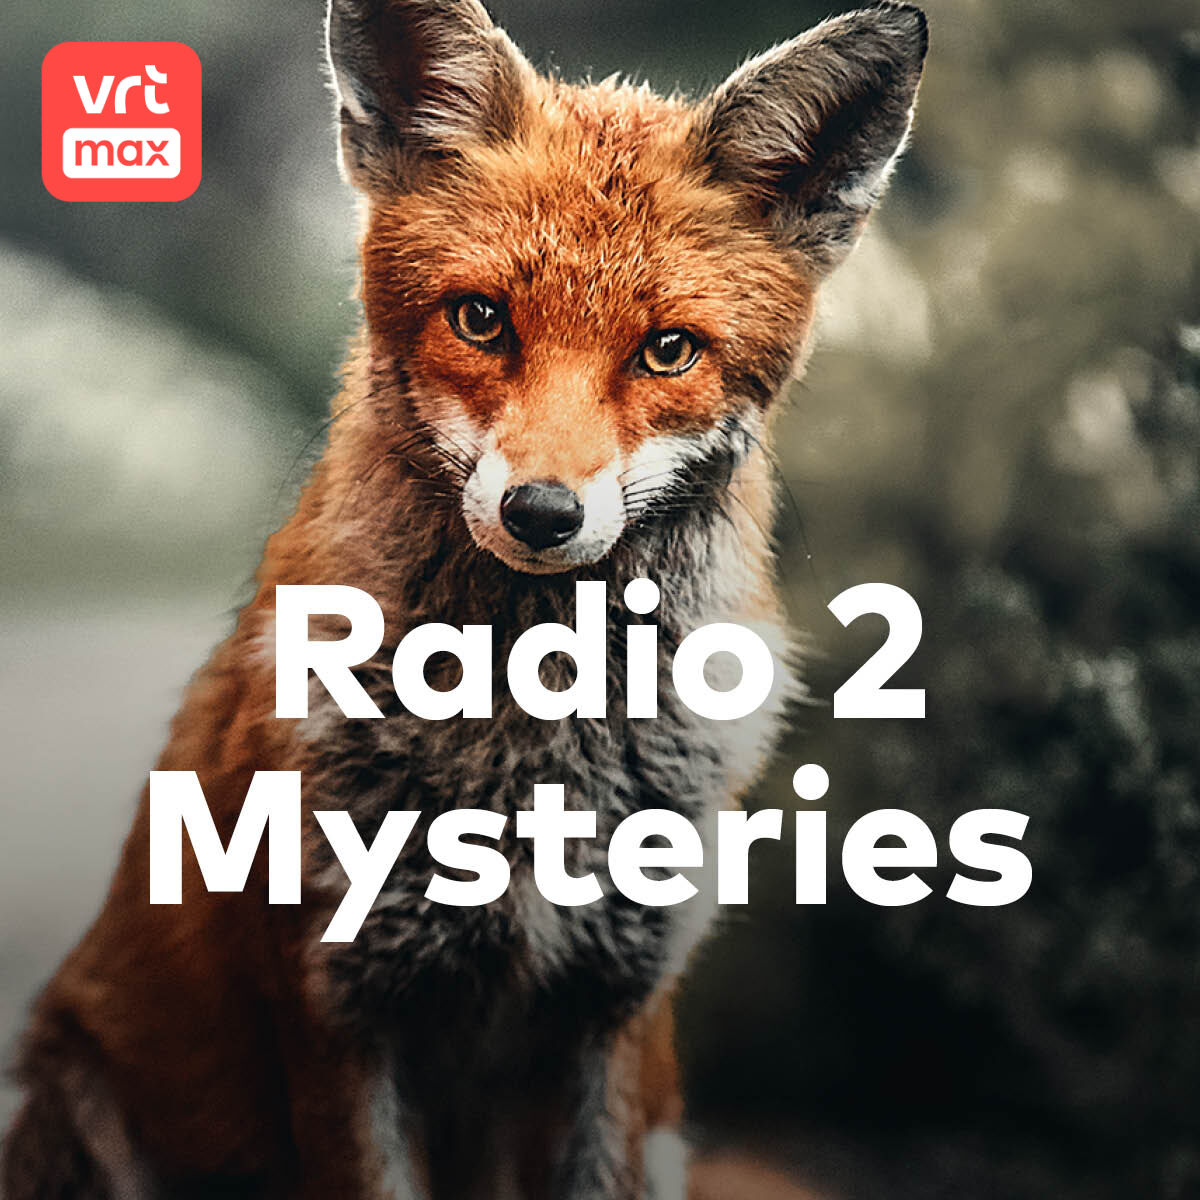 Houden kippen van muziek en vossen niet? - Mysteries in Vlaanderen  [Podcast] | VRT MAX